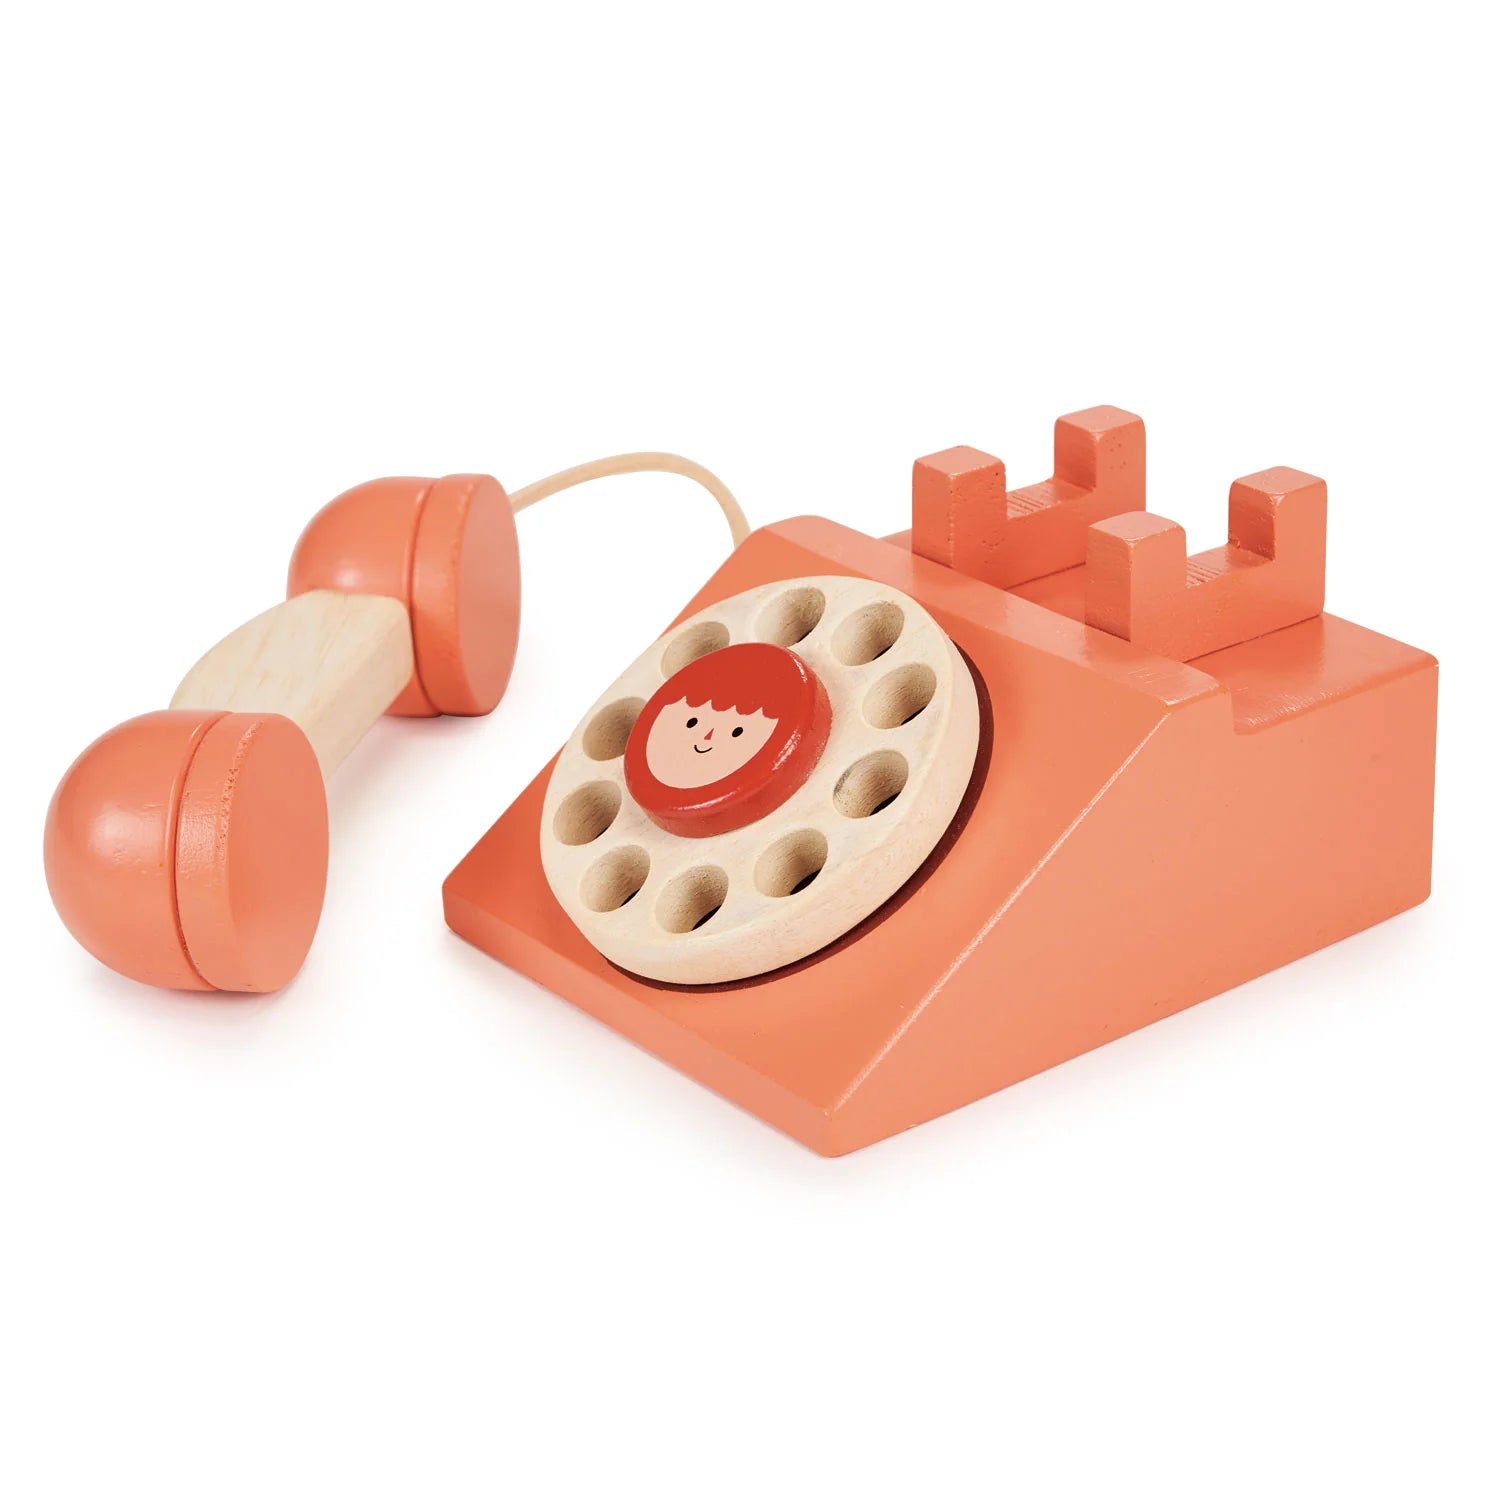 Mentari Ring Ring Telephone-MENTARI-Little Giant Kidz